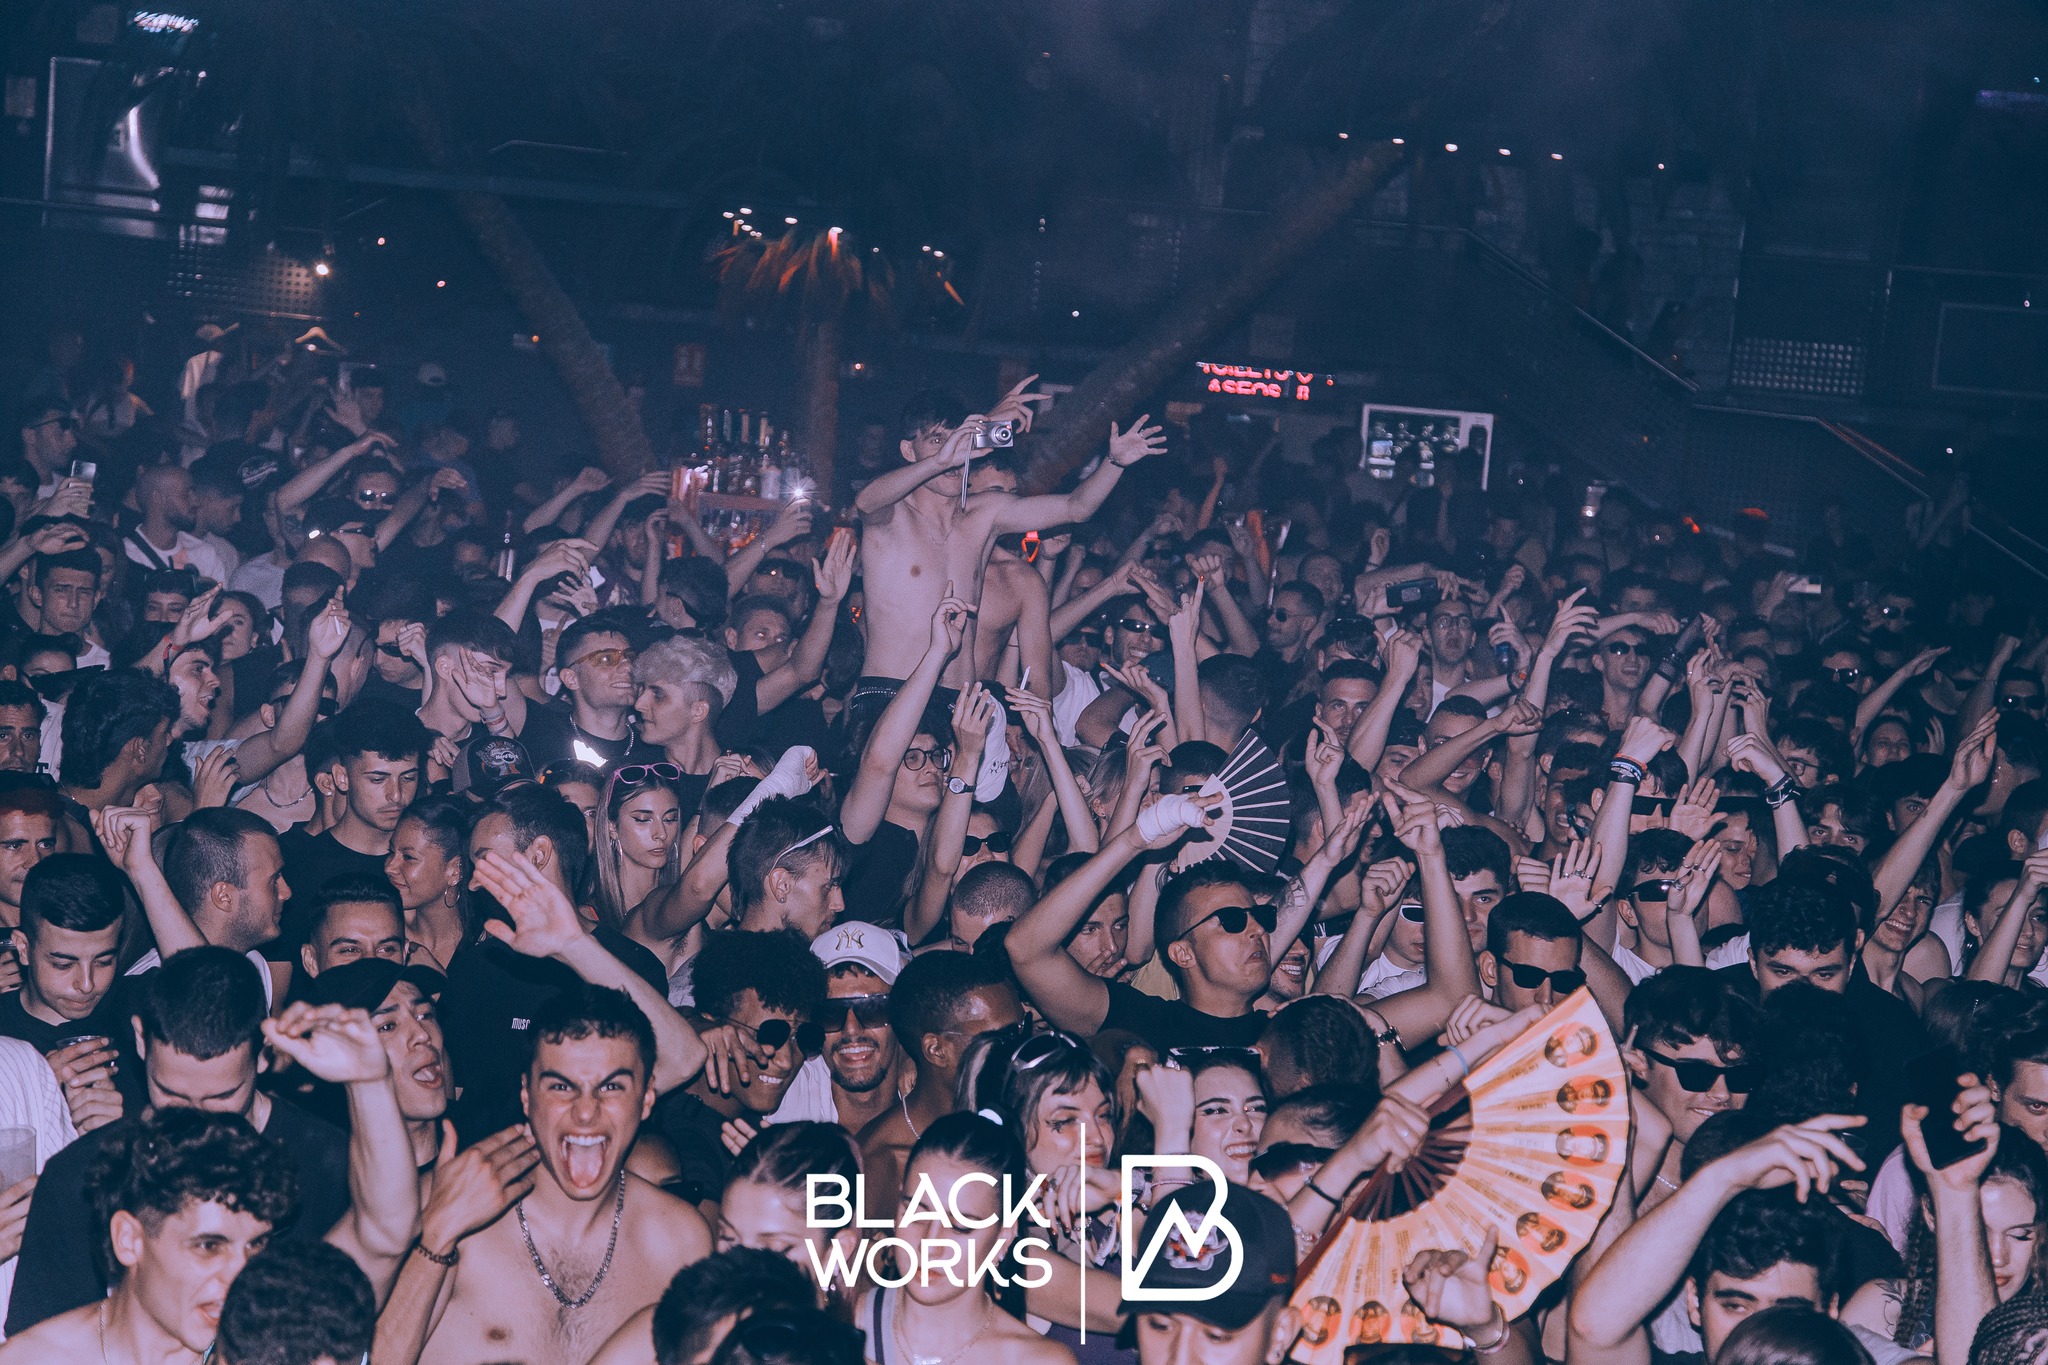 L'ambiance des soirées Blackworks en Espagne